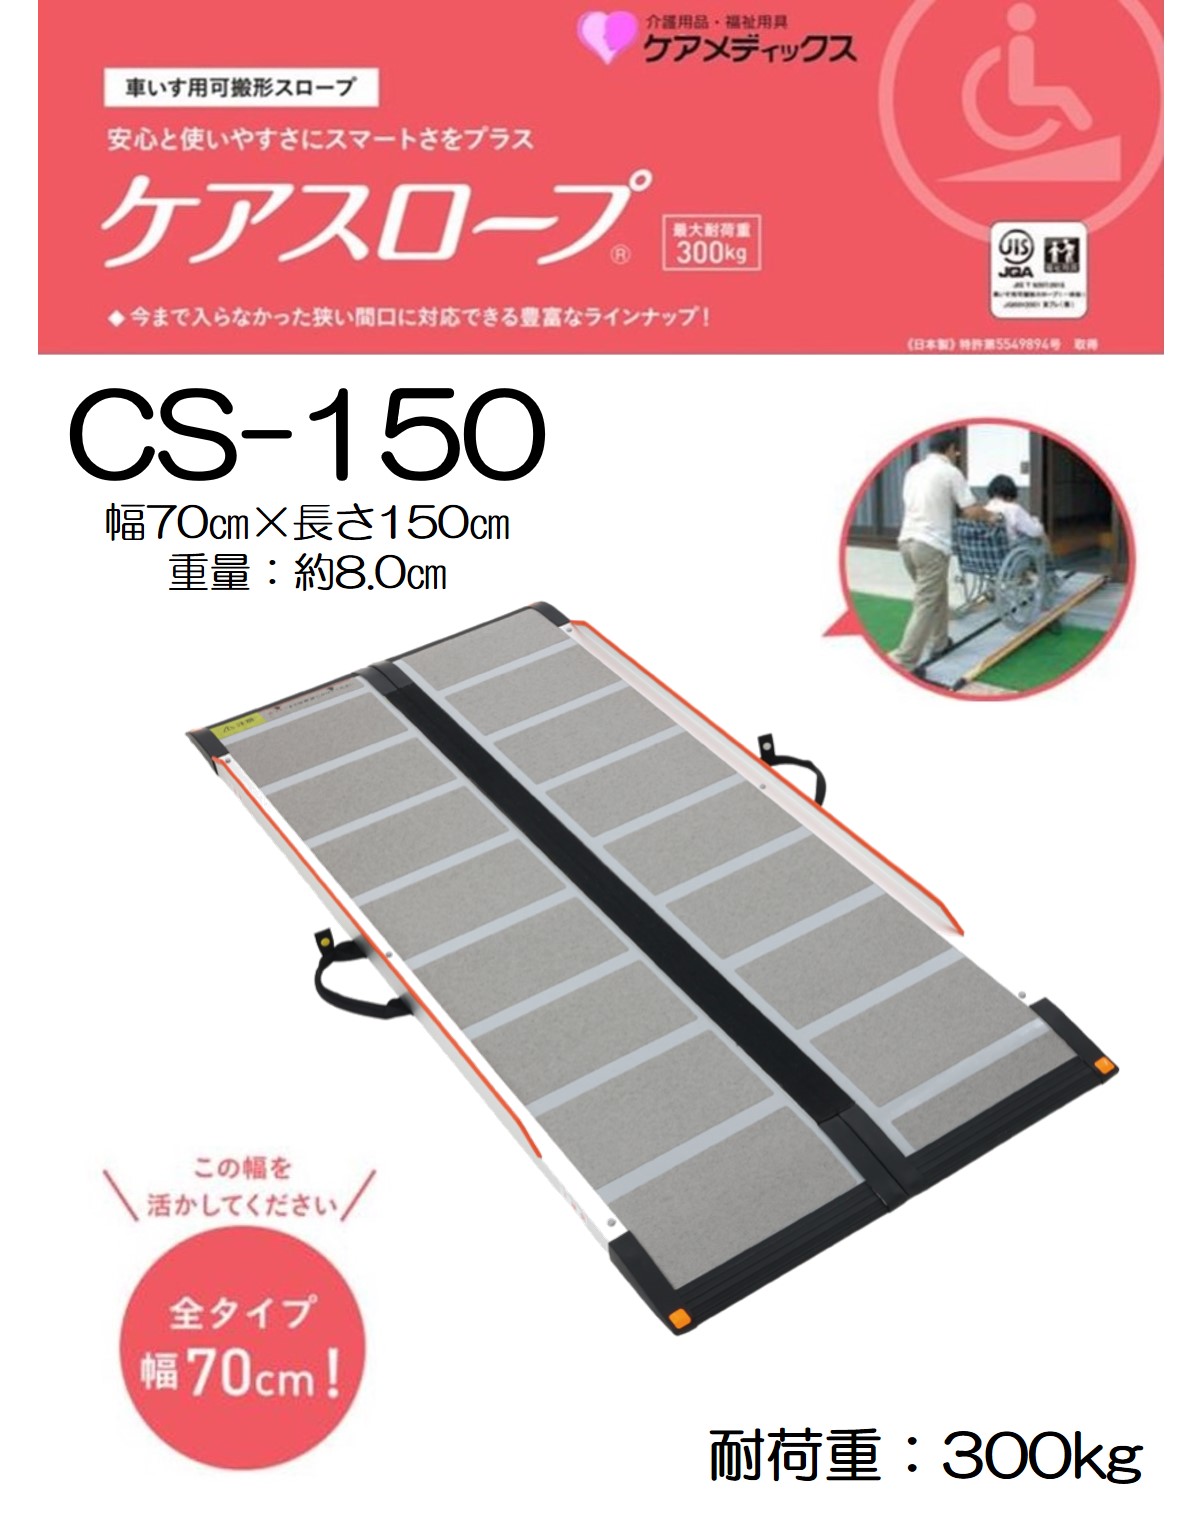 【新品】 ケアスロープ CS-150